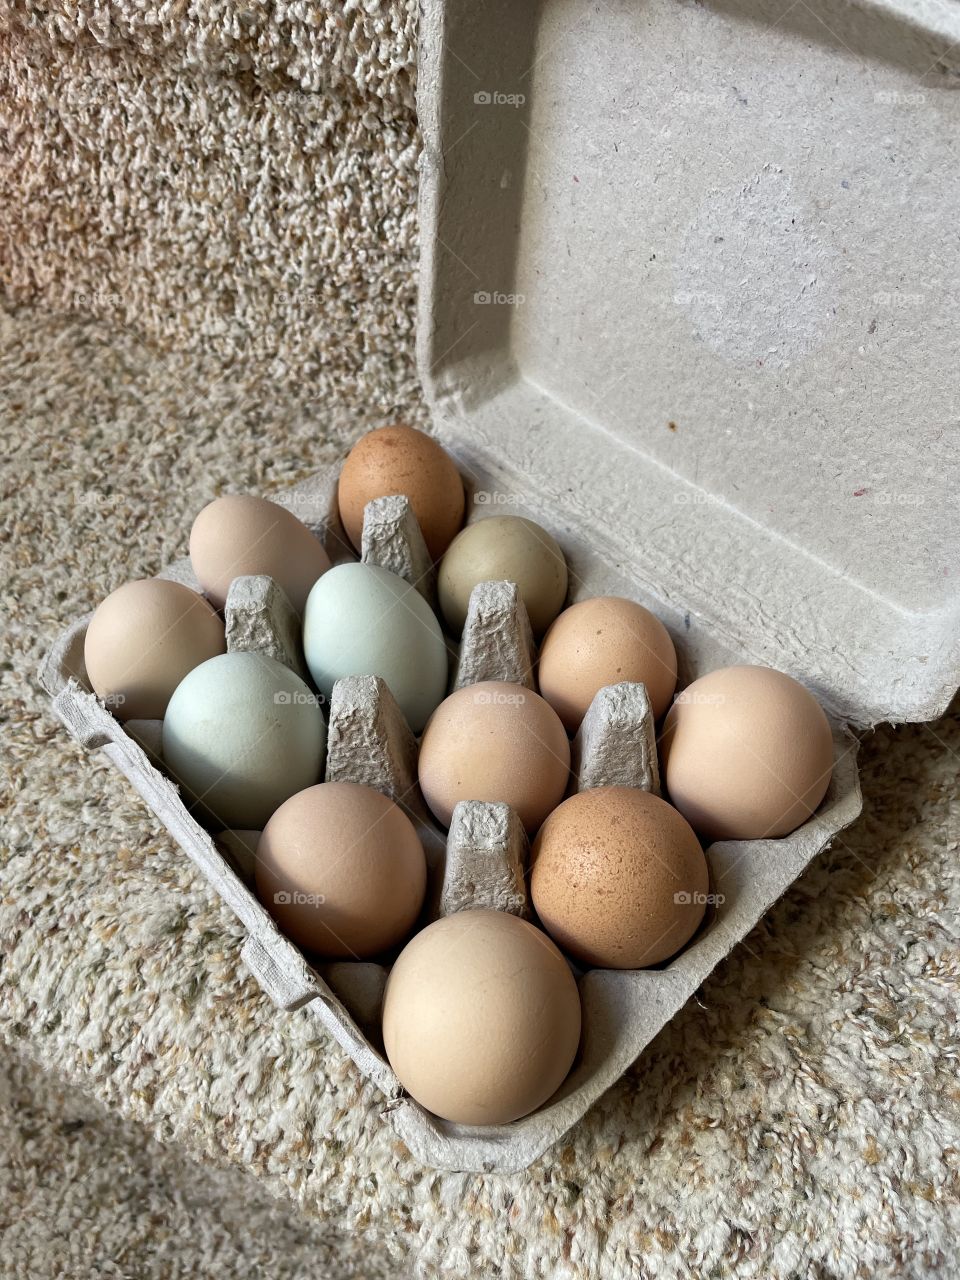 A beautiful dozen of eggs!